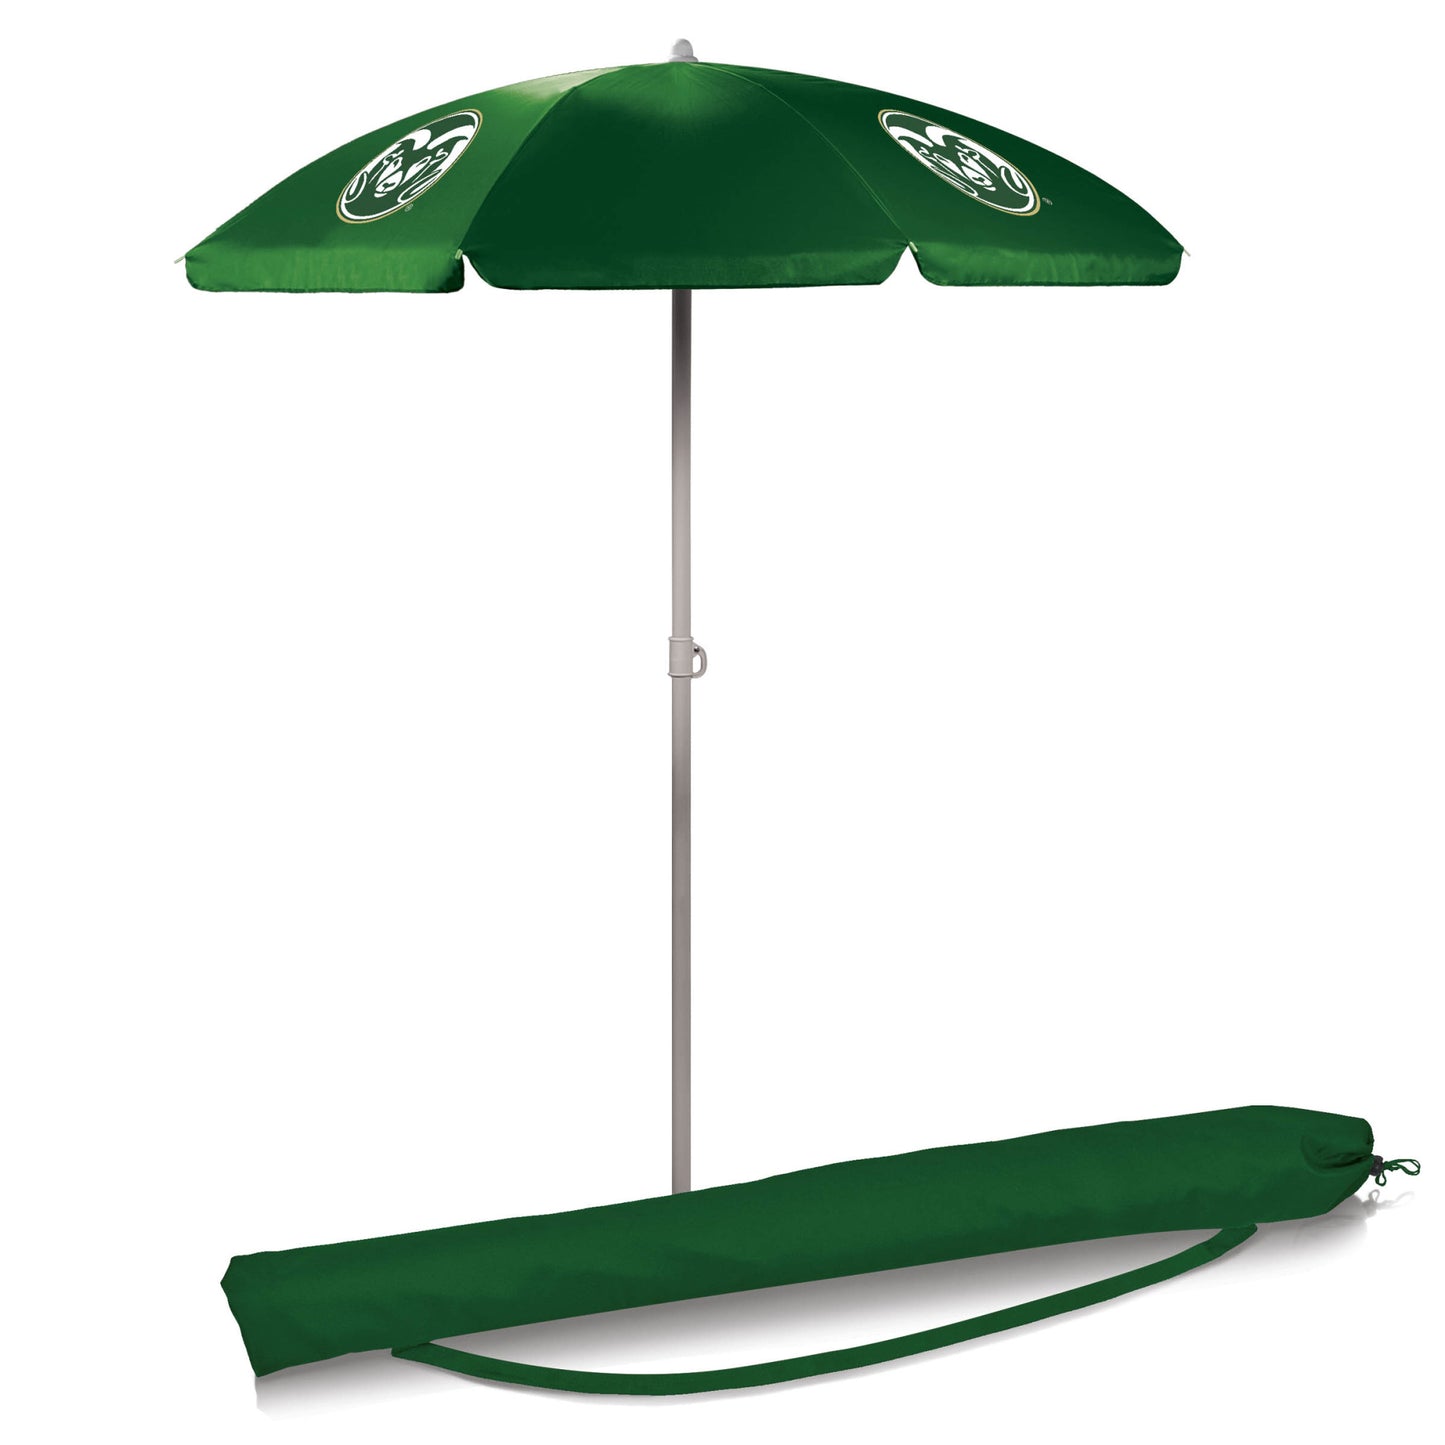 Colorado State Rams 5.5' Portable Beach Umbrella by Picnic Time